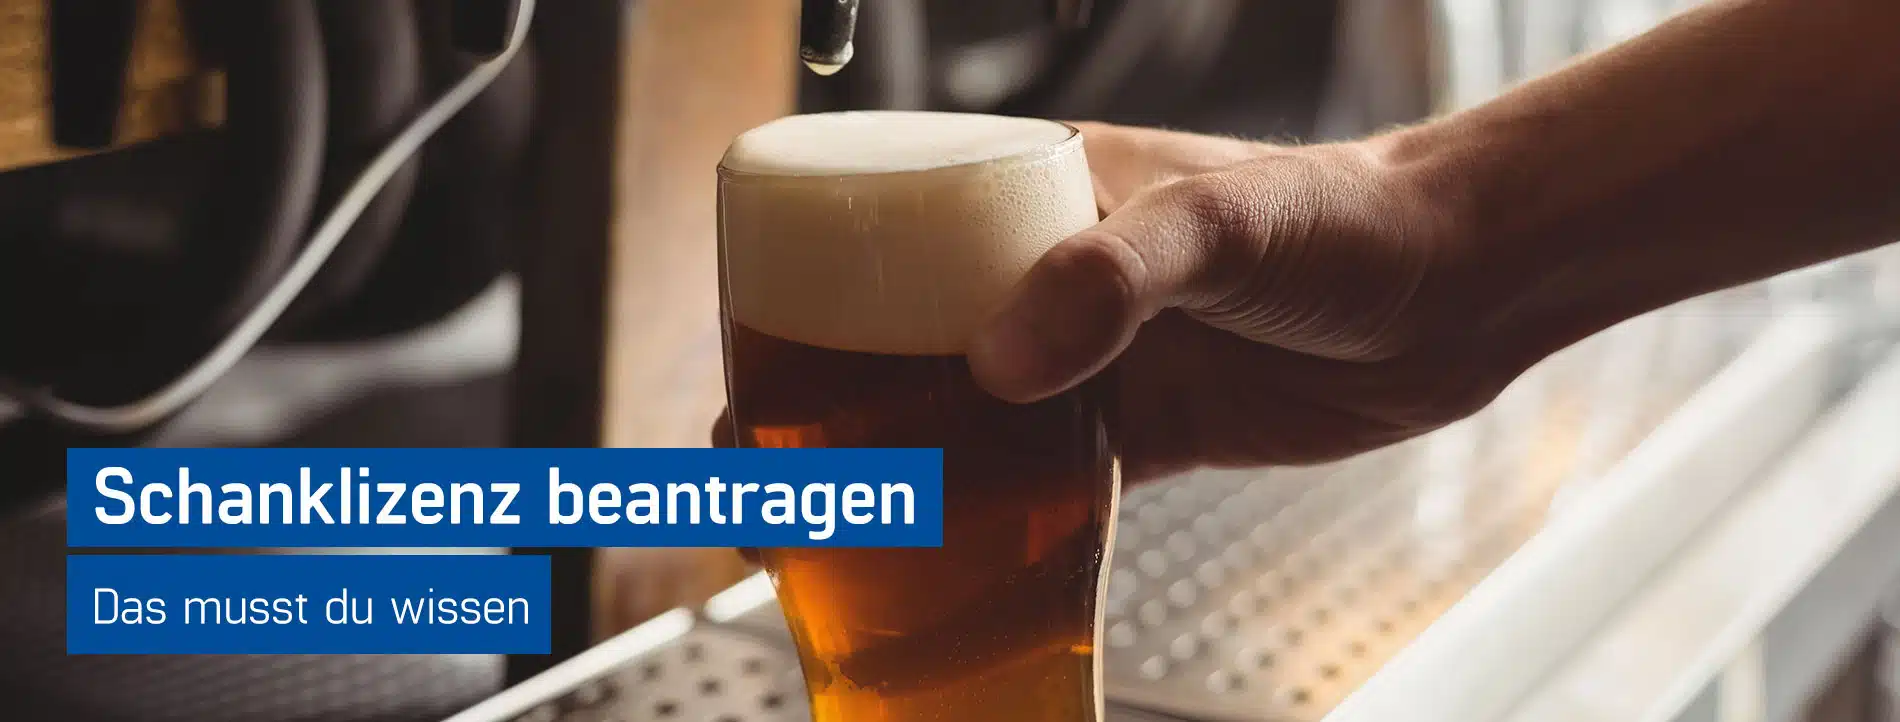 Barkeeper füllt ein Glas Bier an einer Schankanlage, Schanklizenz beantragen mit dem Guide von GastroSoft